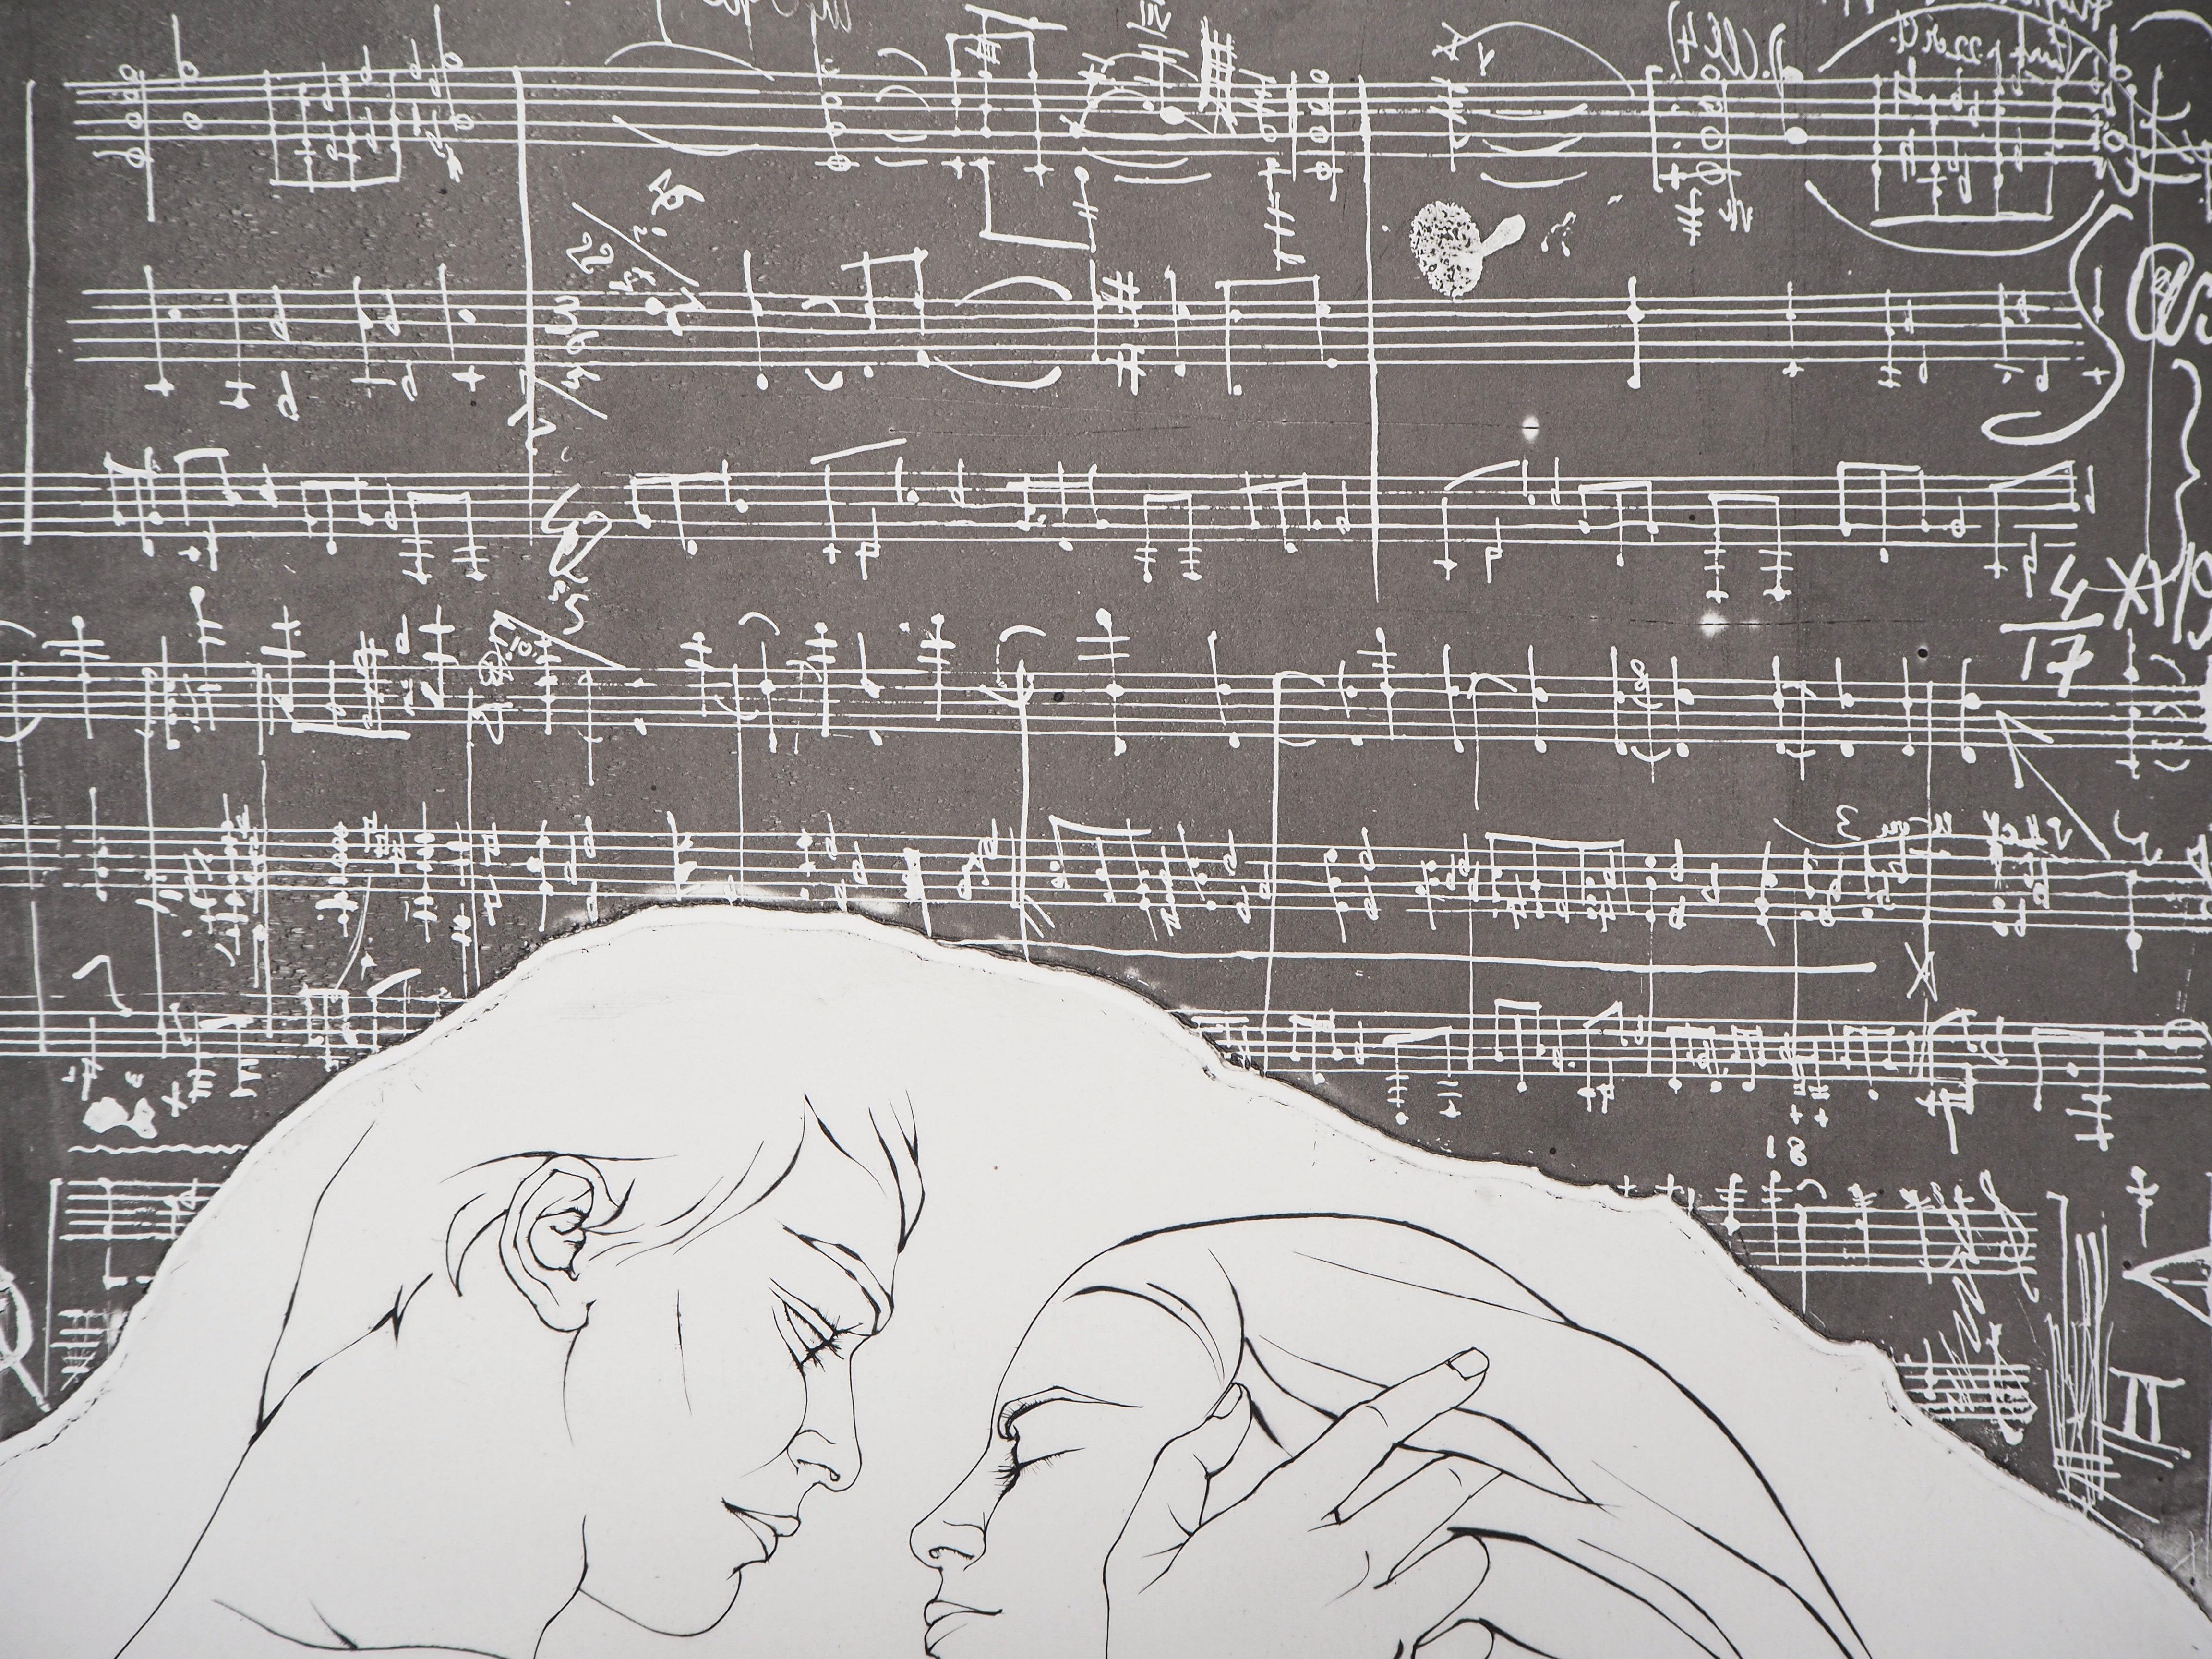 Pierre-Yves TREMOIS
Harmony, 1968

Gravure originale
Signé par l'artiste 
Justifié par 